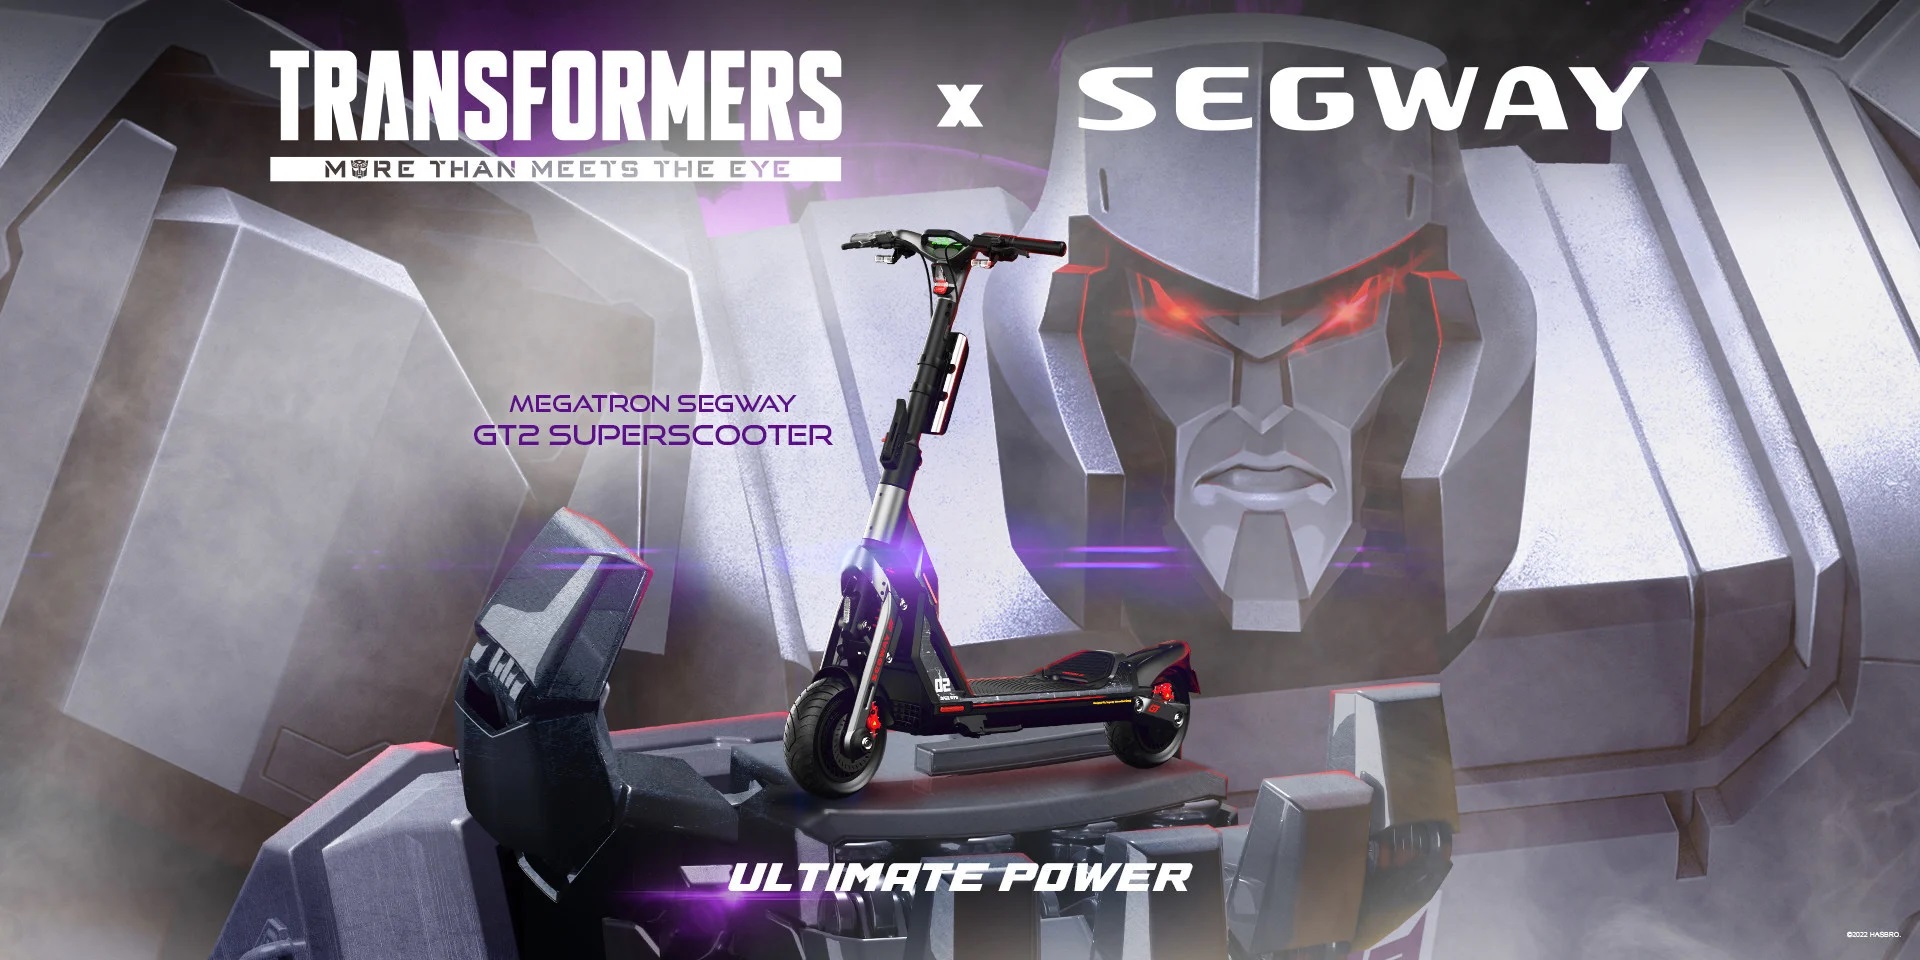 Segway-Ninebot i Hasbro wypuszczają limitowaną edycję gokartów i skuterów elektrycznych z okazji Transformersów